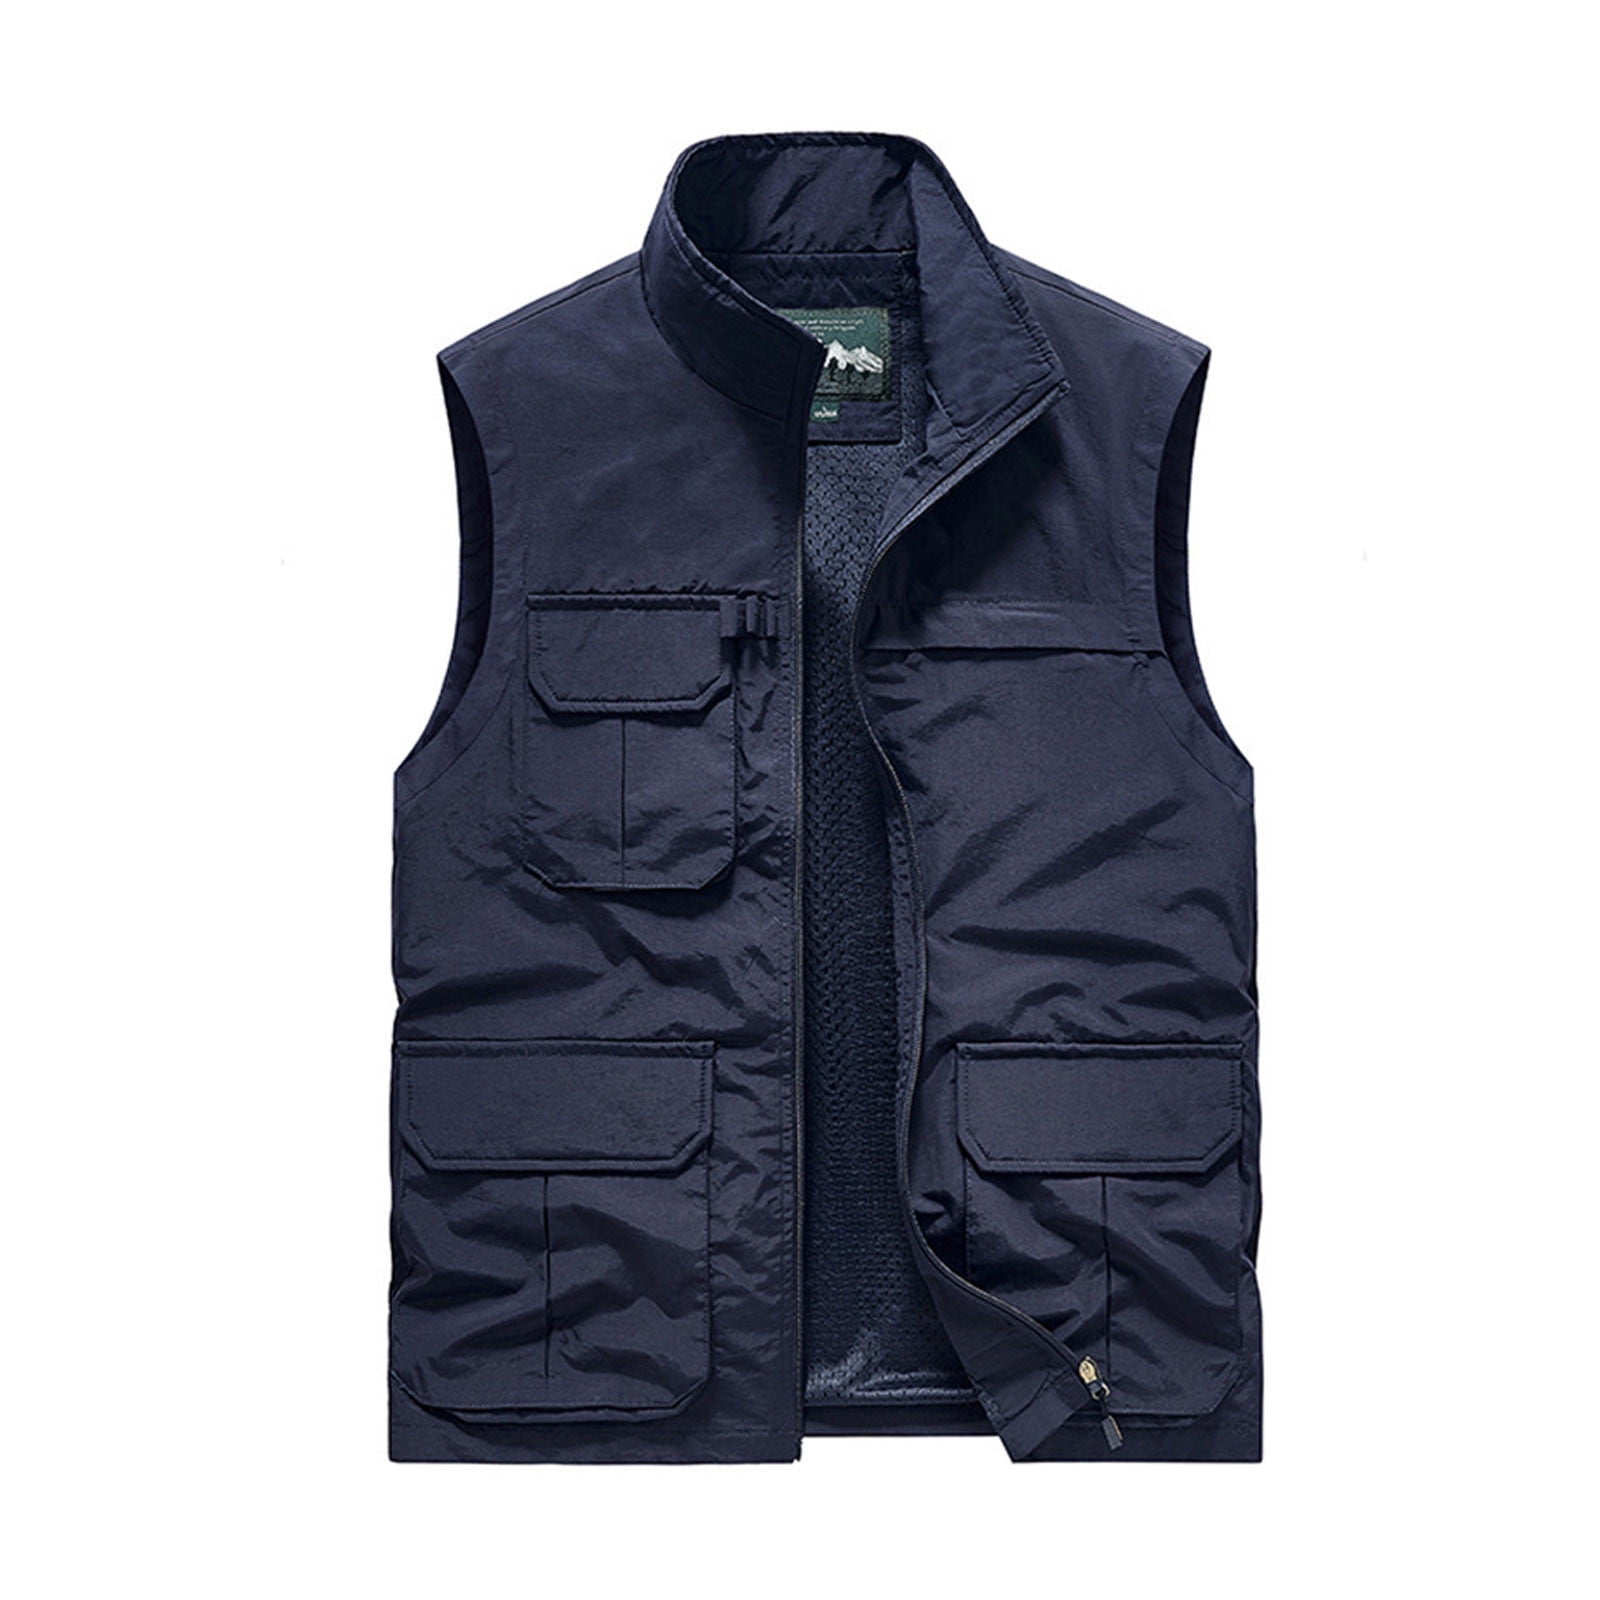 YYDGH Men's Outdoor Fishing Vest Casual Work Cargo Vests